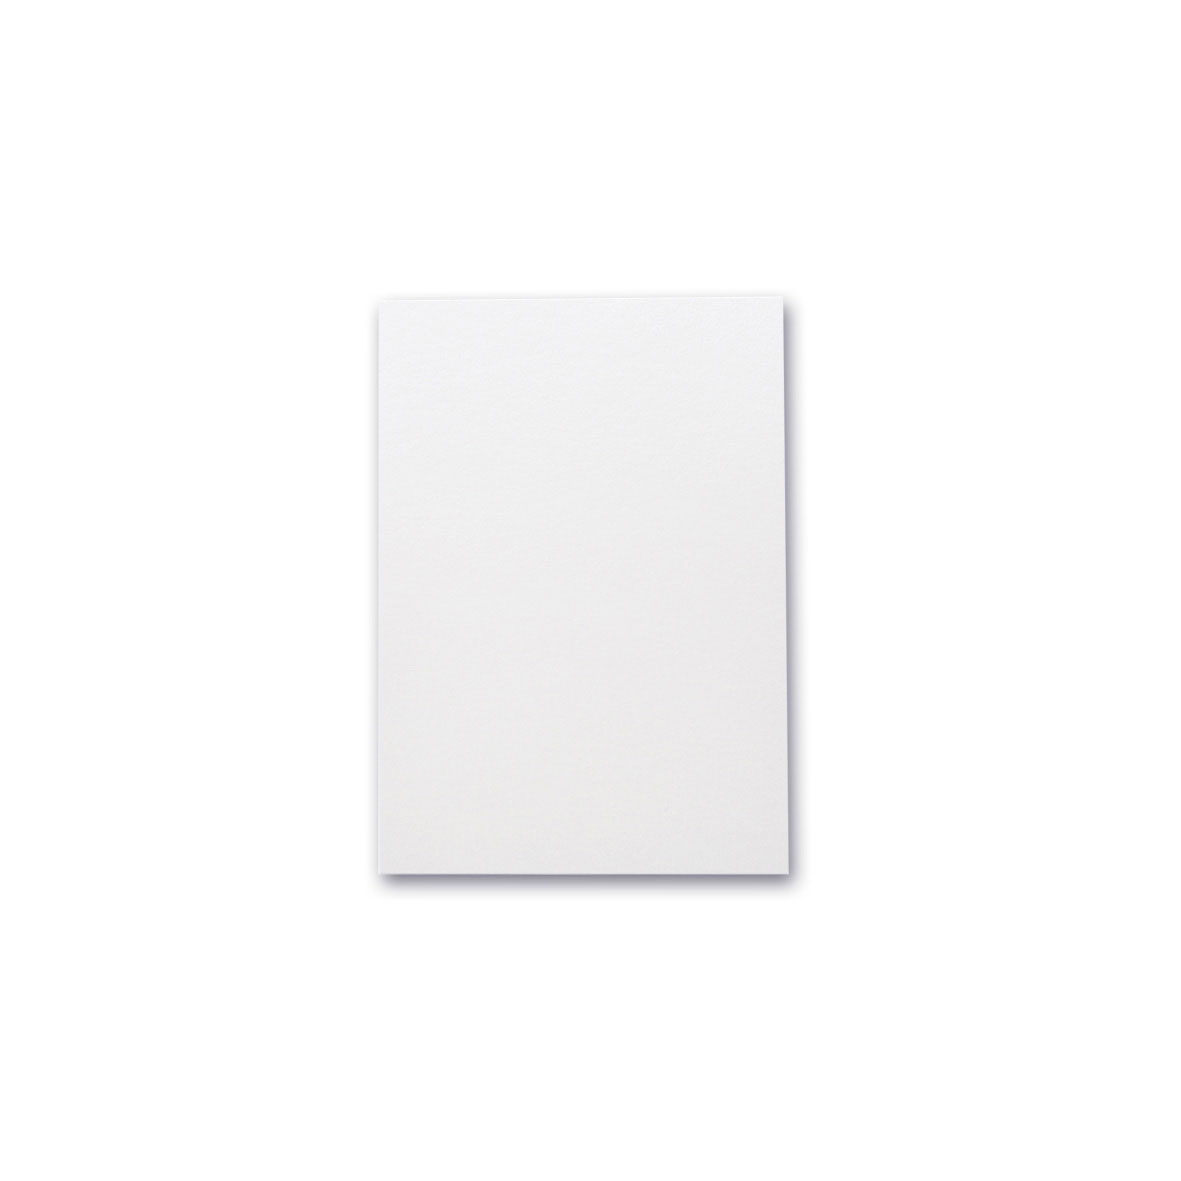 A4 White Sparkle 250gsm board